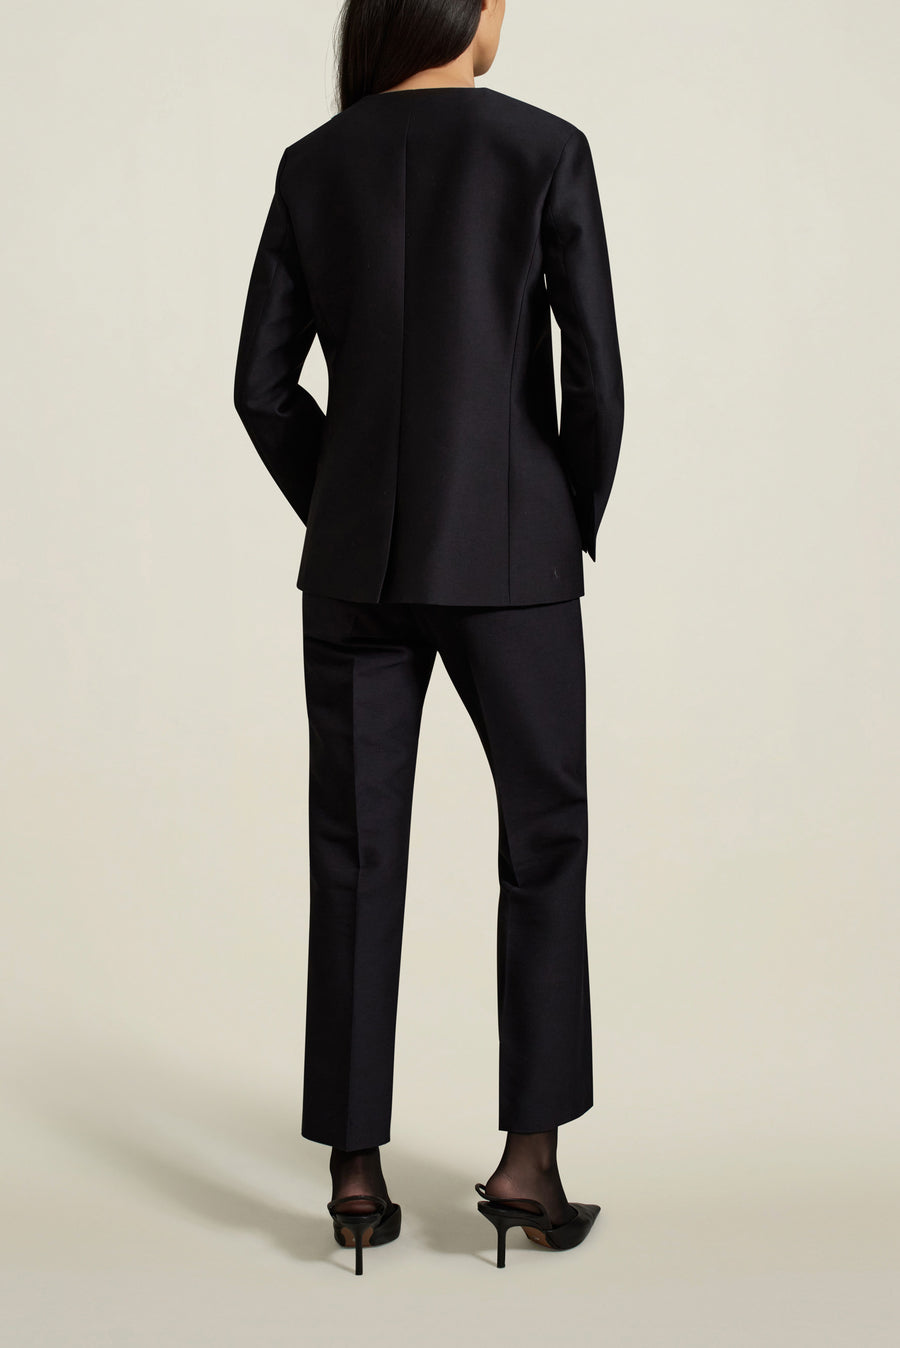 Nora Tuxedo Trouser in Navy Silk Wool Twill